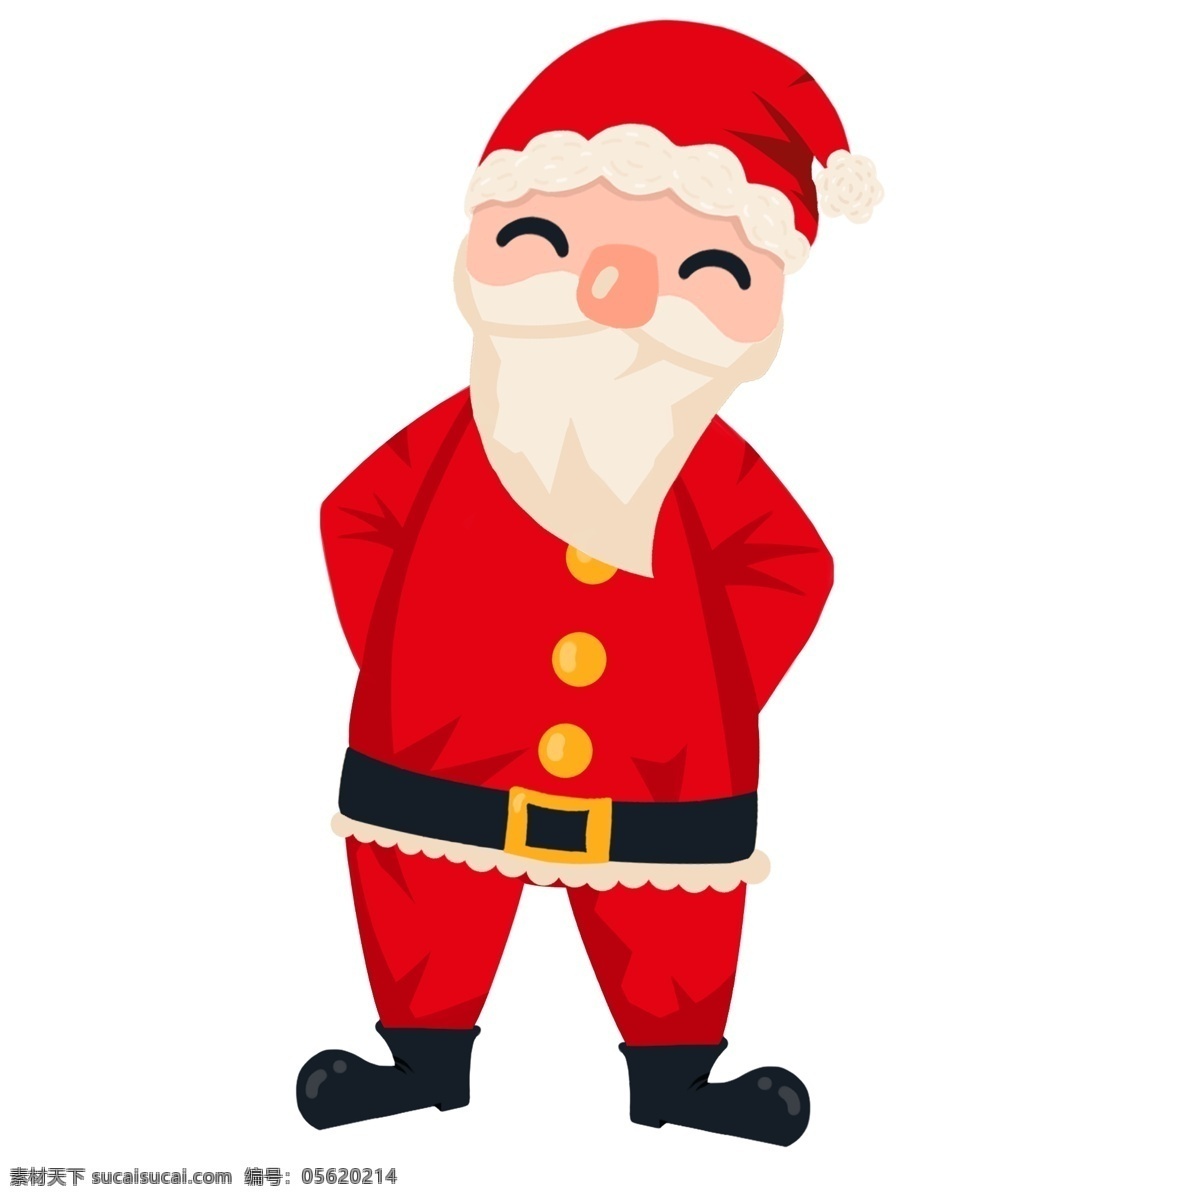 卡通 圣诞老人 可爱 手绘 礼物 礼物盒 圣诞节 送礼 糖果拐杖 圣诞礼物 白胡子老爷爷 大胡子 惊喜 礼物袋